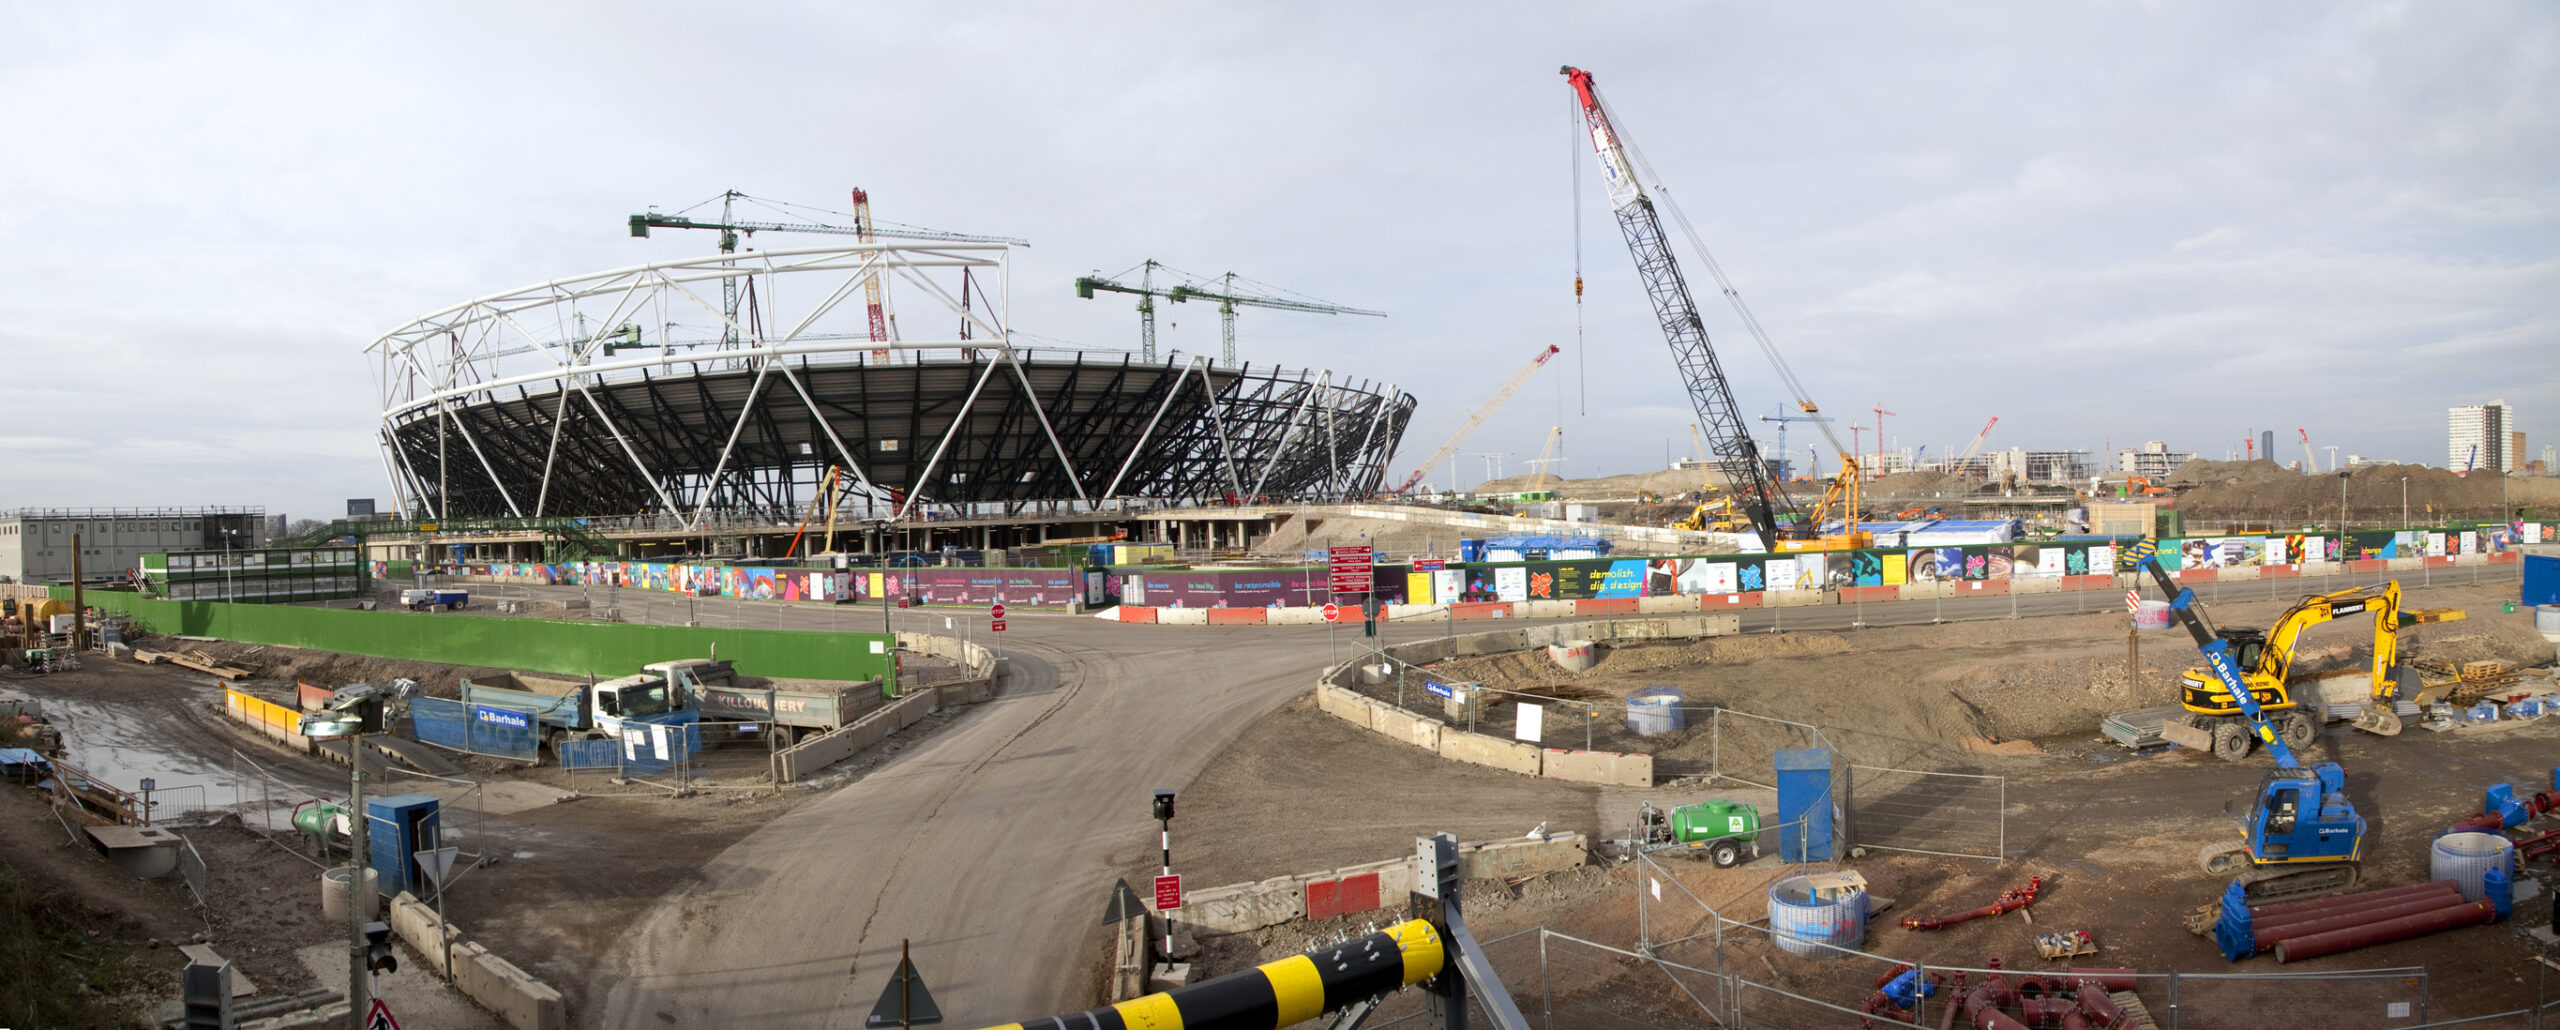 Construcția Stadionului Olimpic din Londra. Sursă foto: Dreamstime